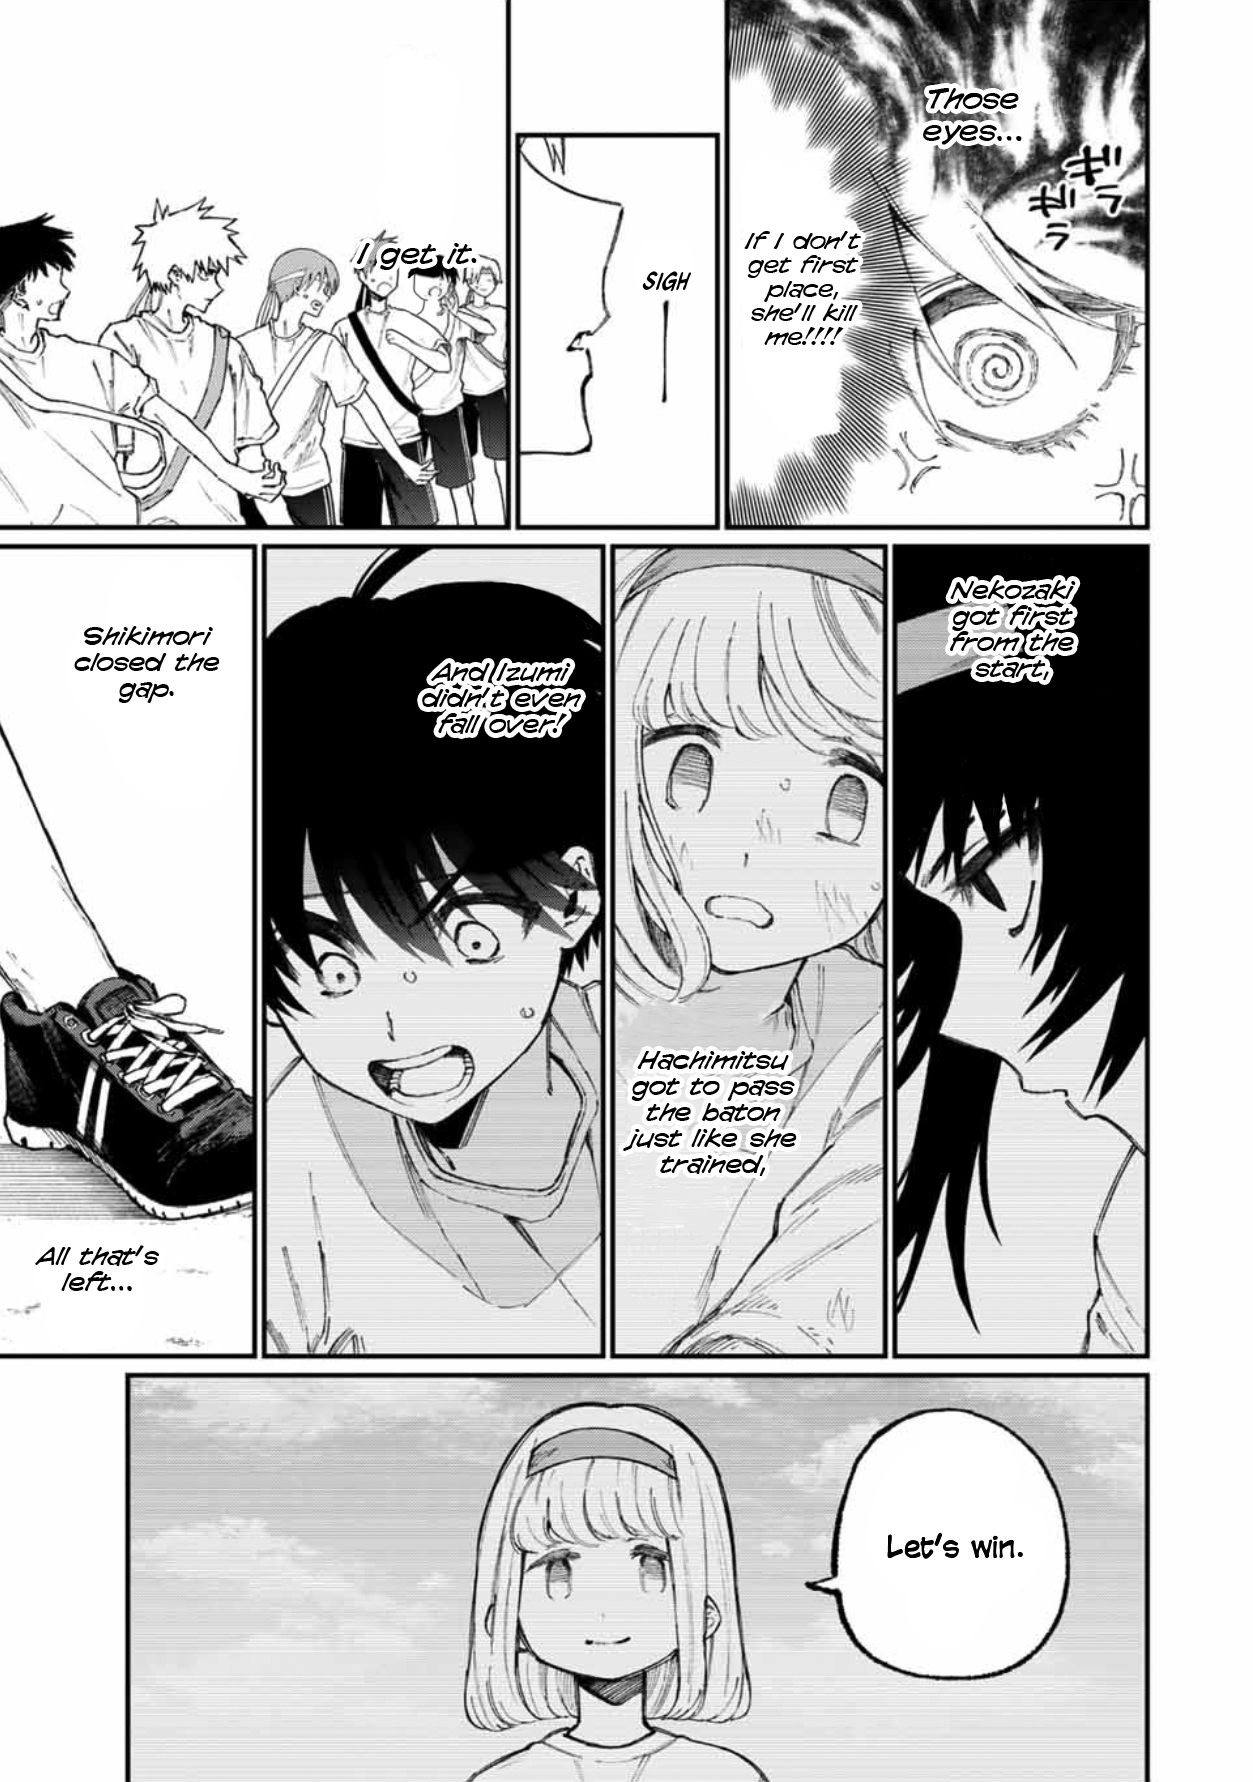 Shikimori's Not Just A Cutie - chapter 56 - #6